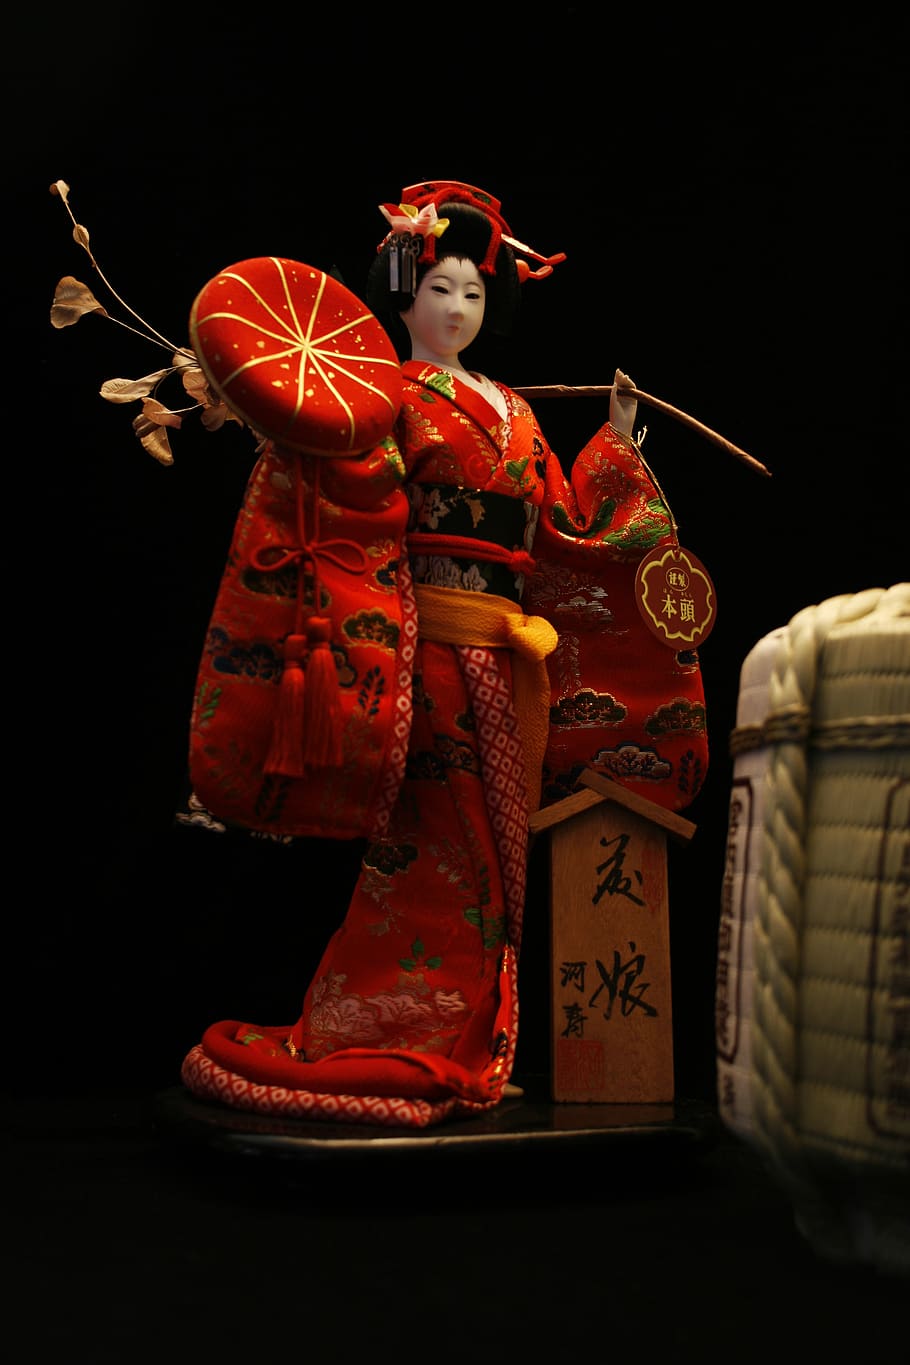 japonés, muñeca, muñeca japonesa, kimono, japón, cultura, asia, sake, en el interior, una persona